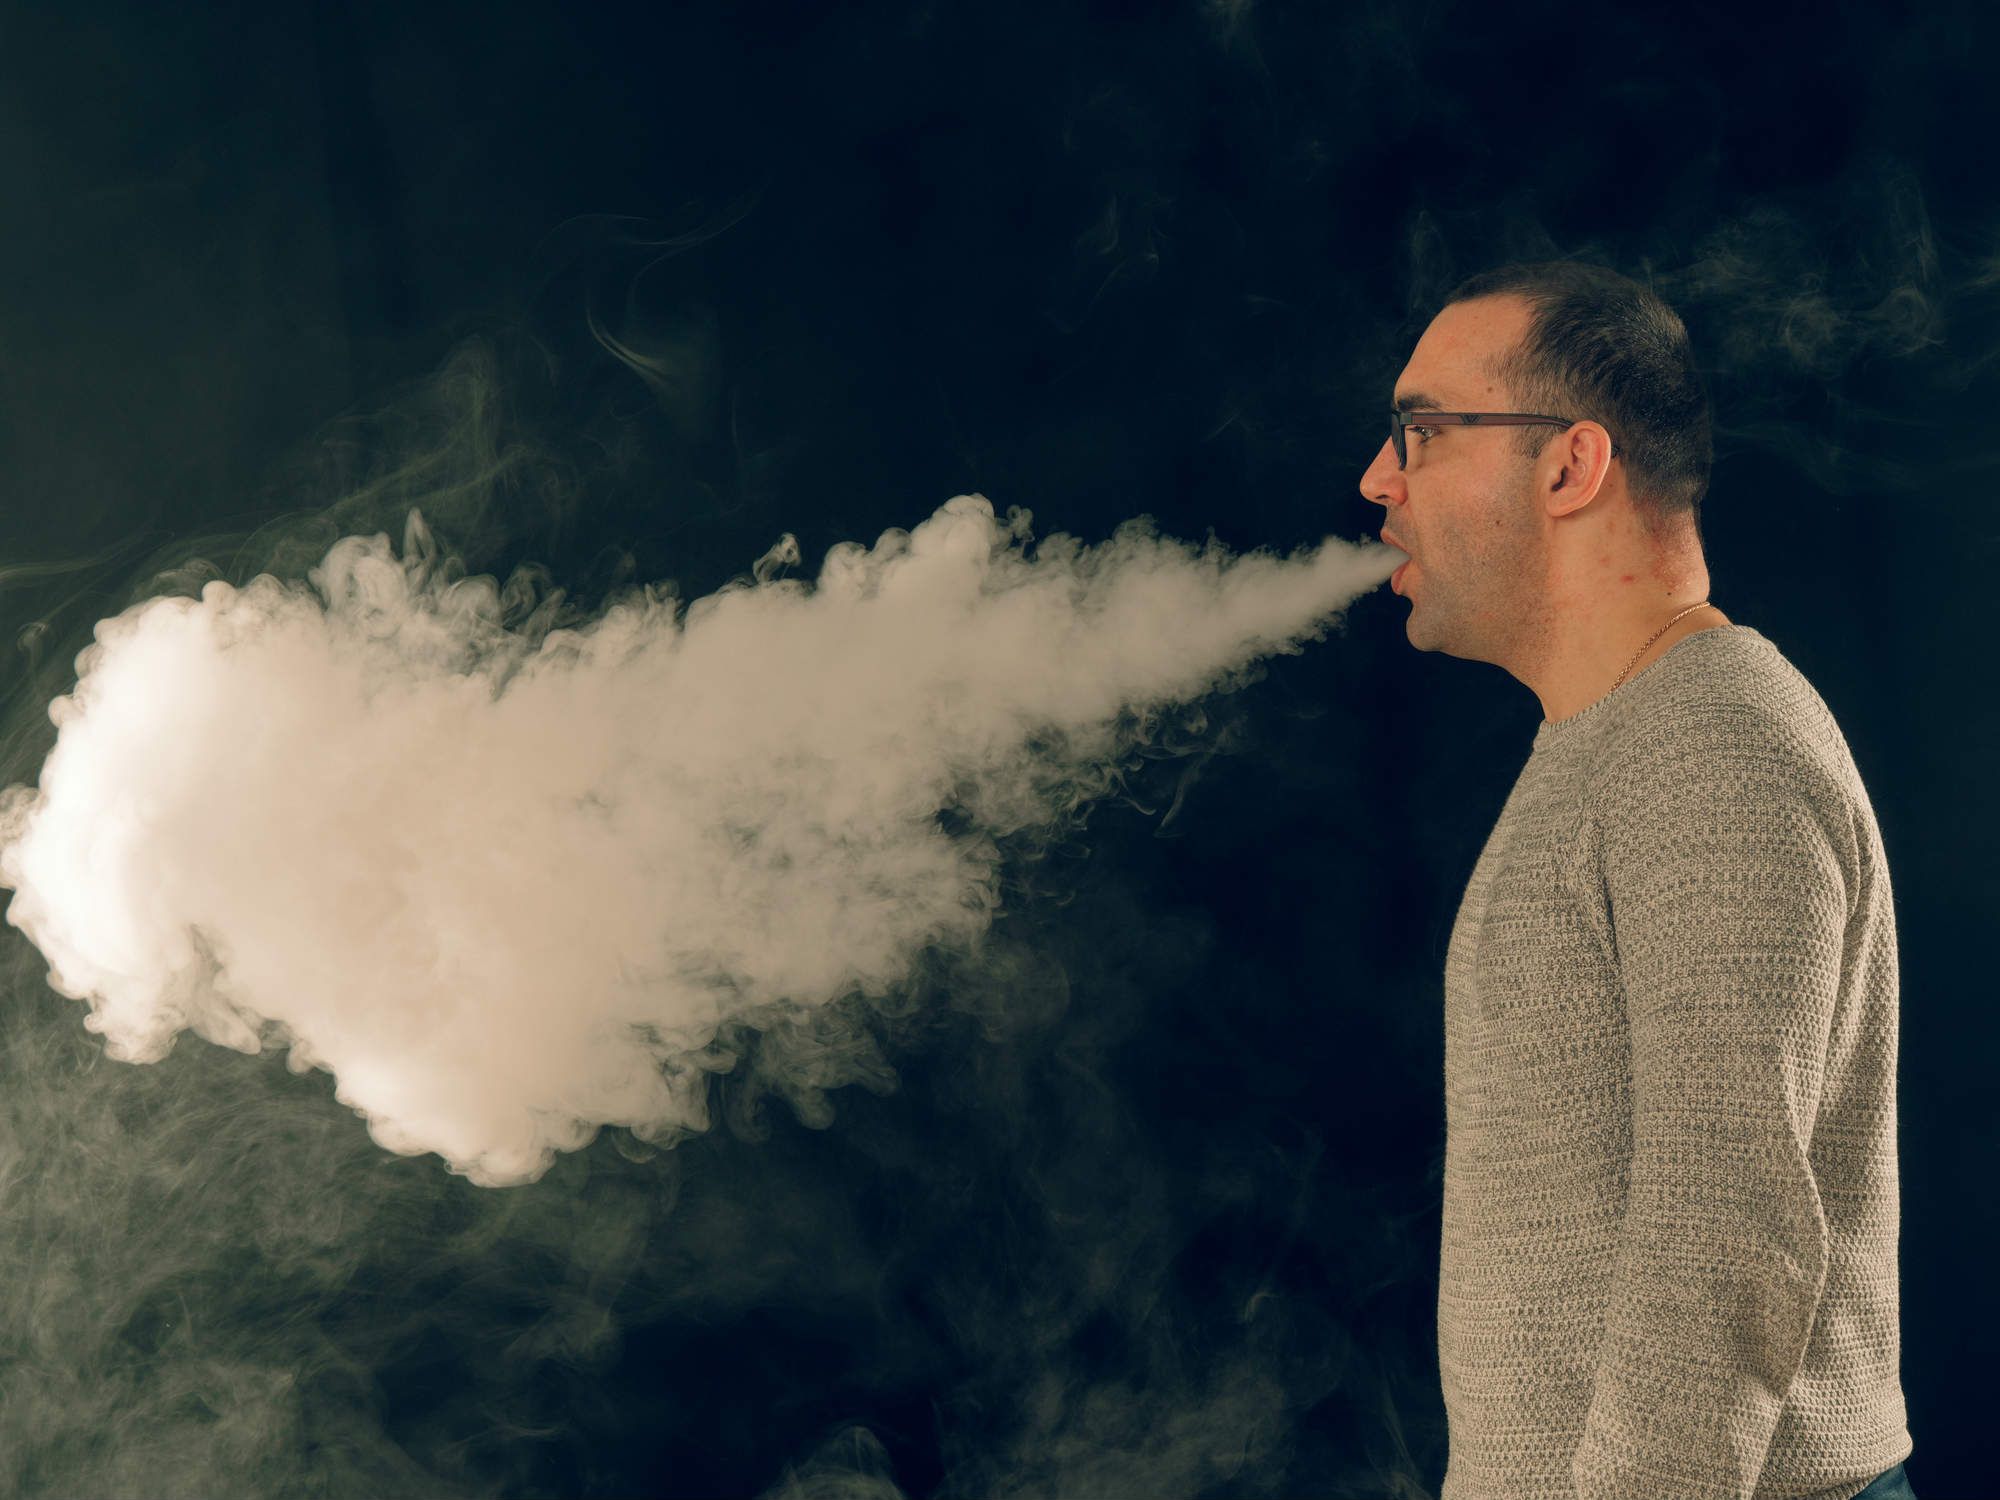 Man exhaling vape cloud